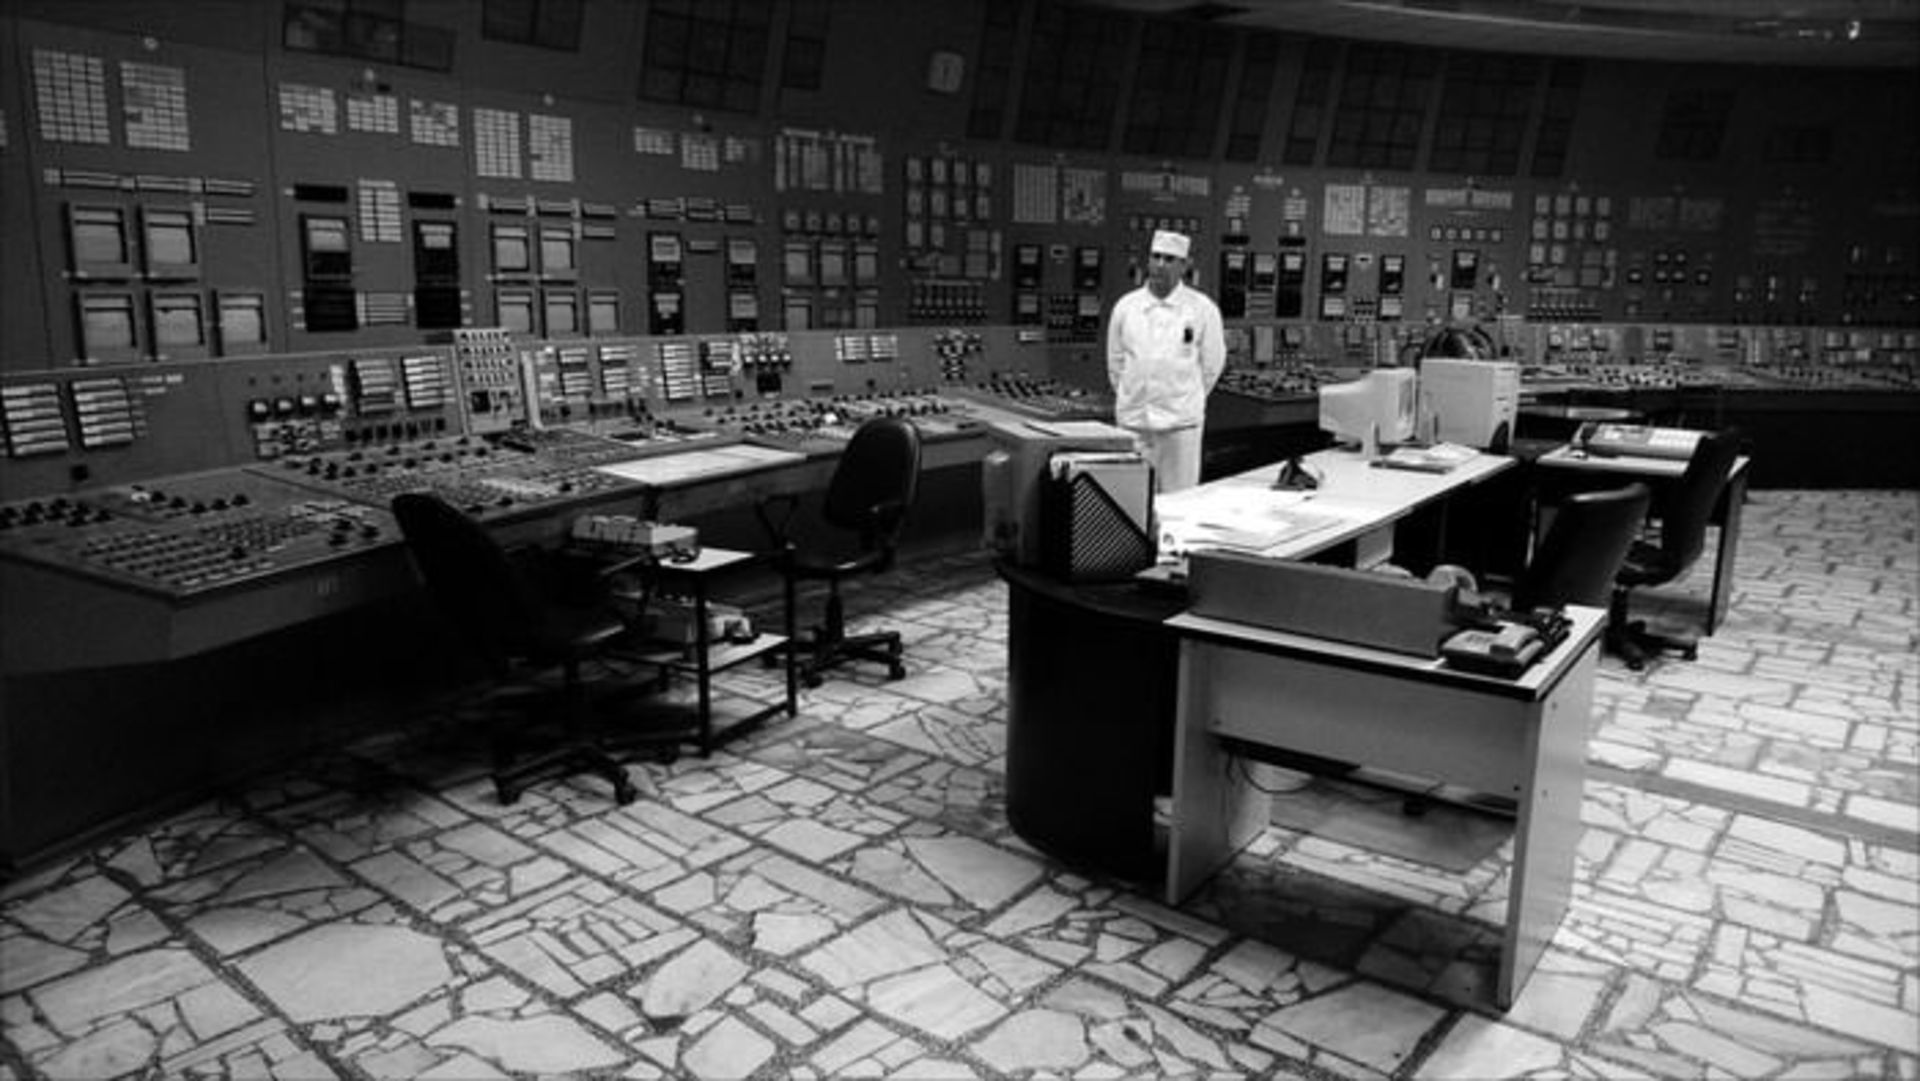 مرجع متخصصين ايران چرنوبيل / Chernobyl